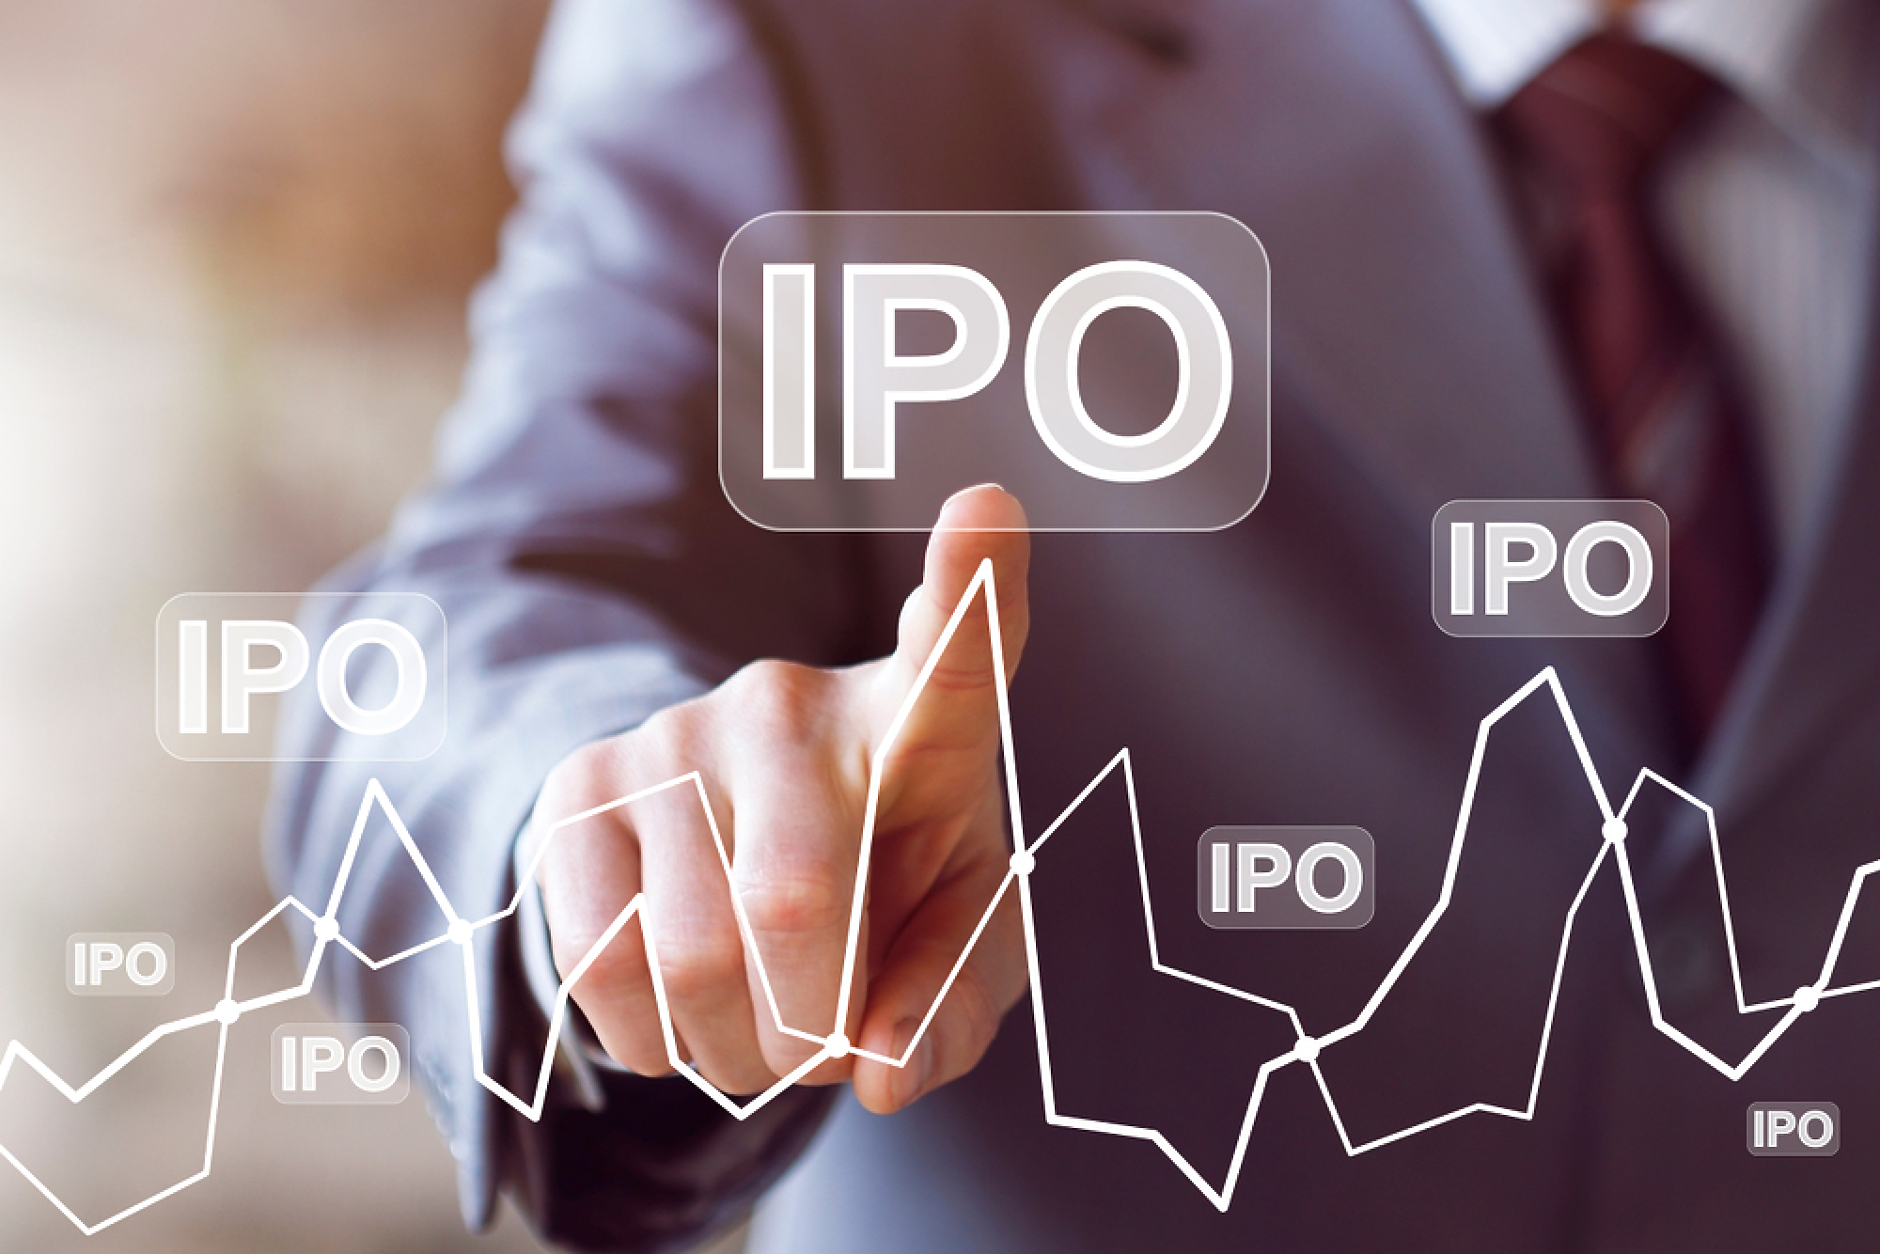 Анализатори: Световният IPO пазар показва признаци на възстановяване